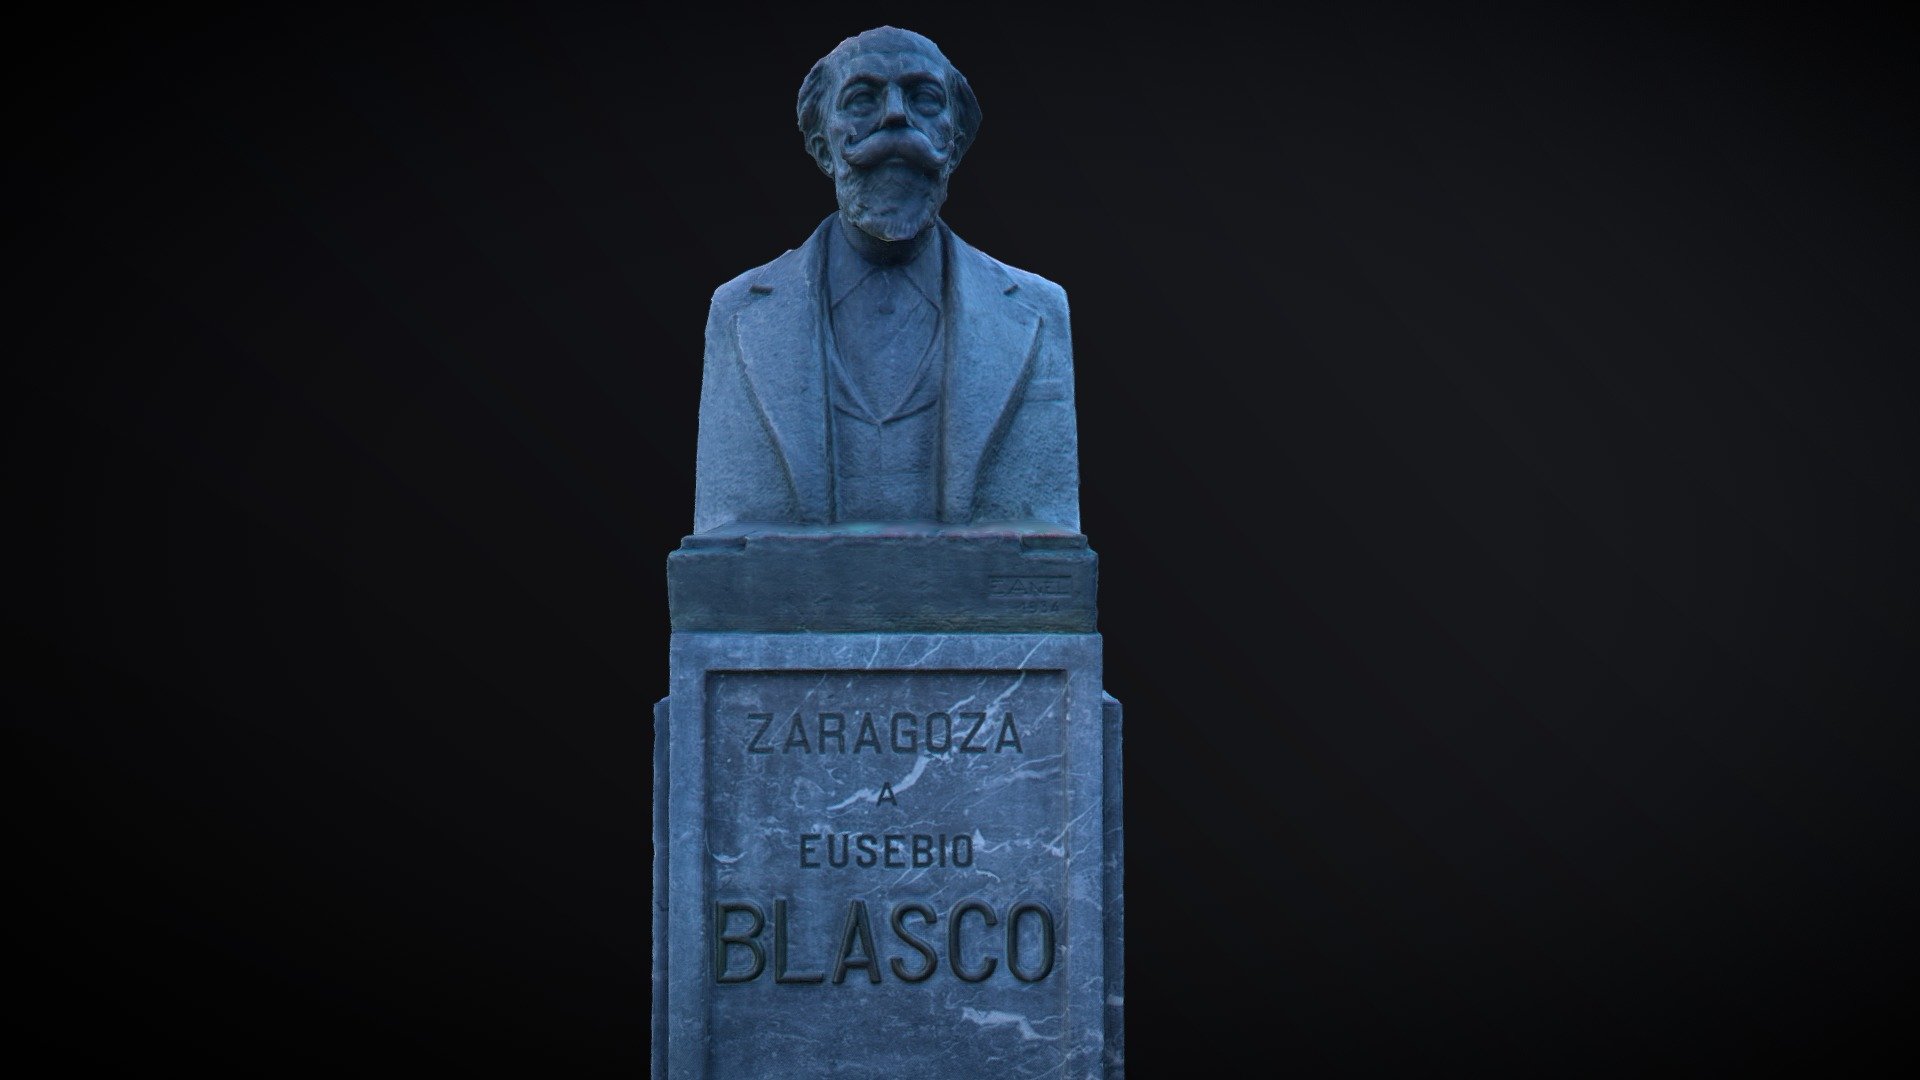 Eusebio Blasco